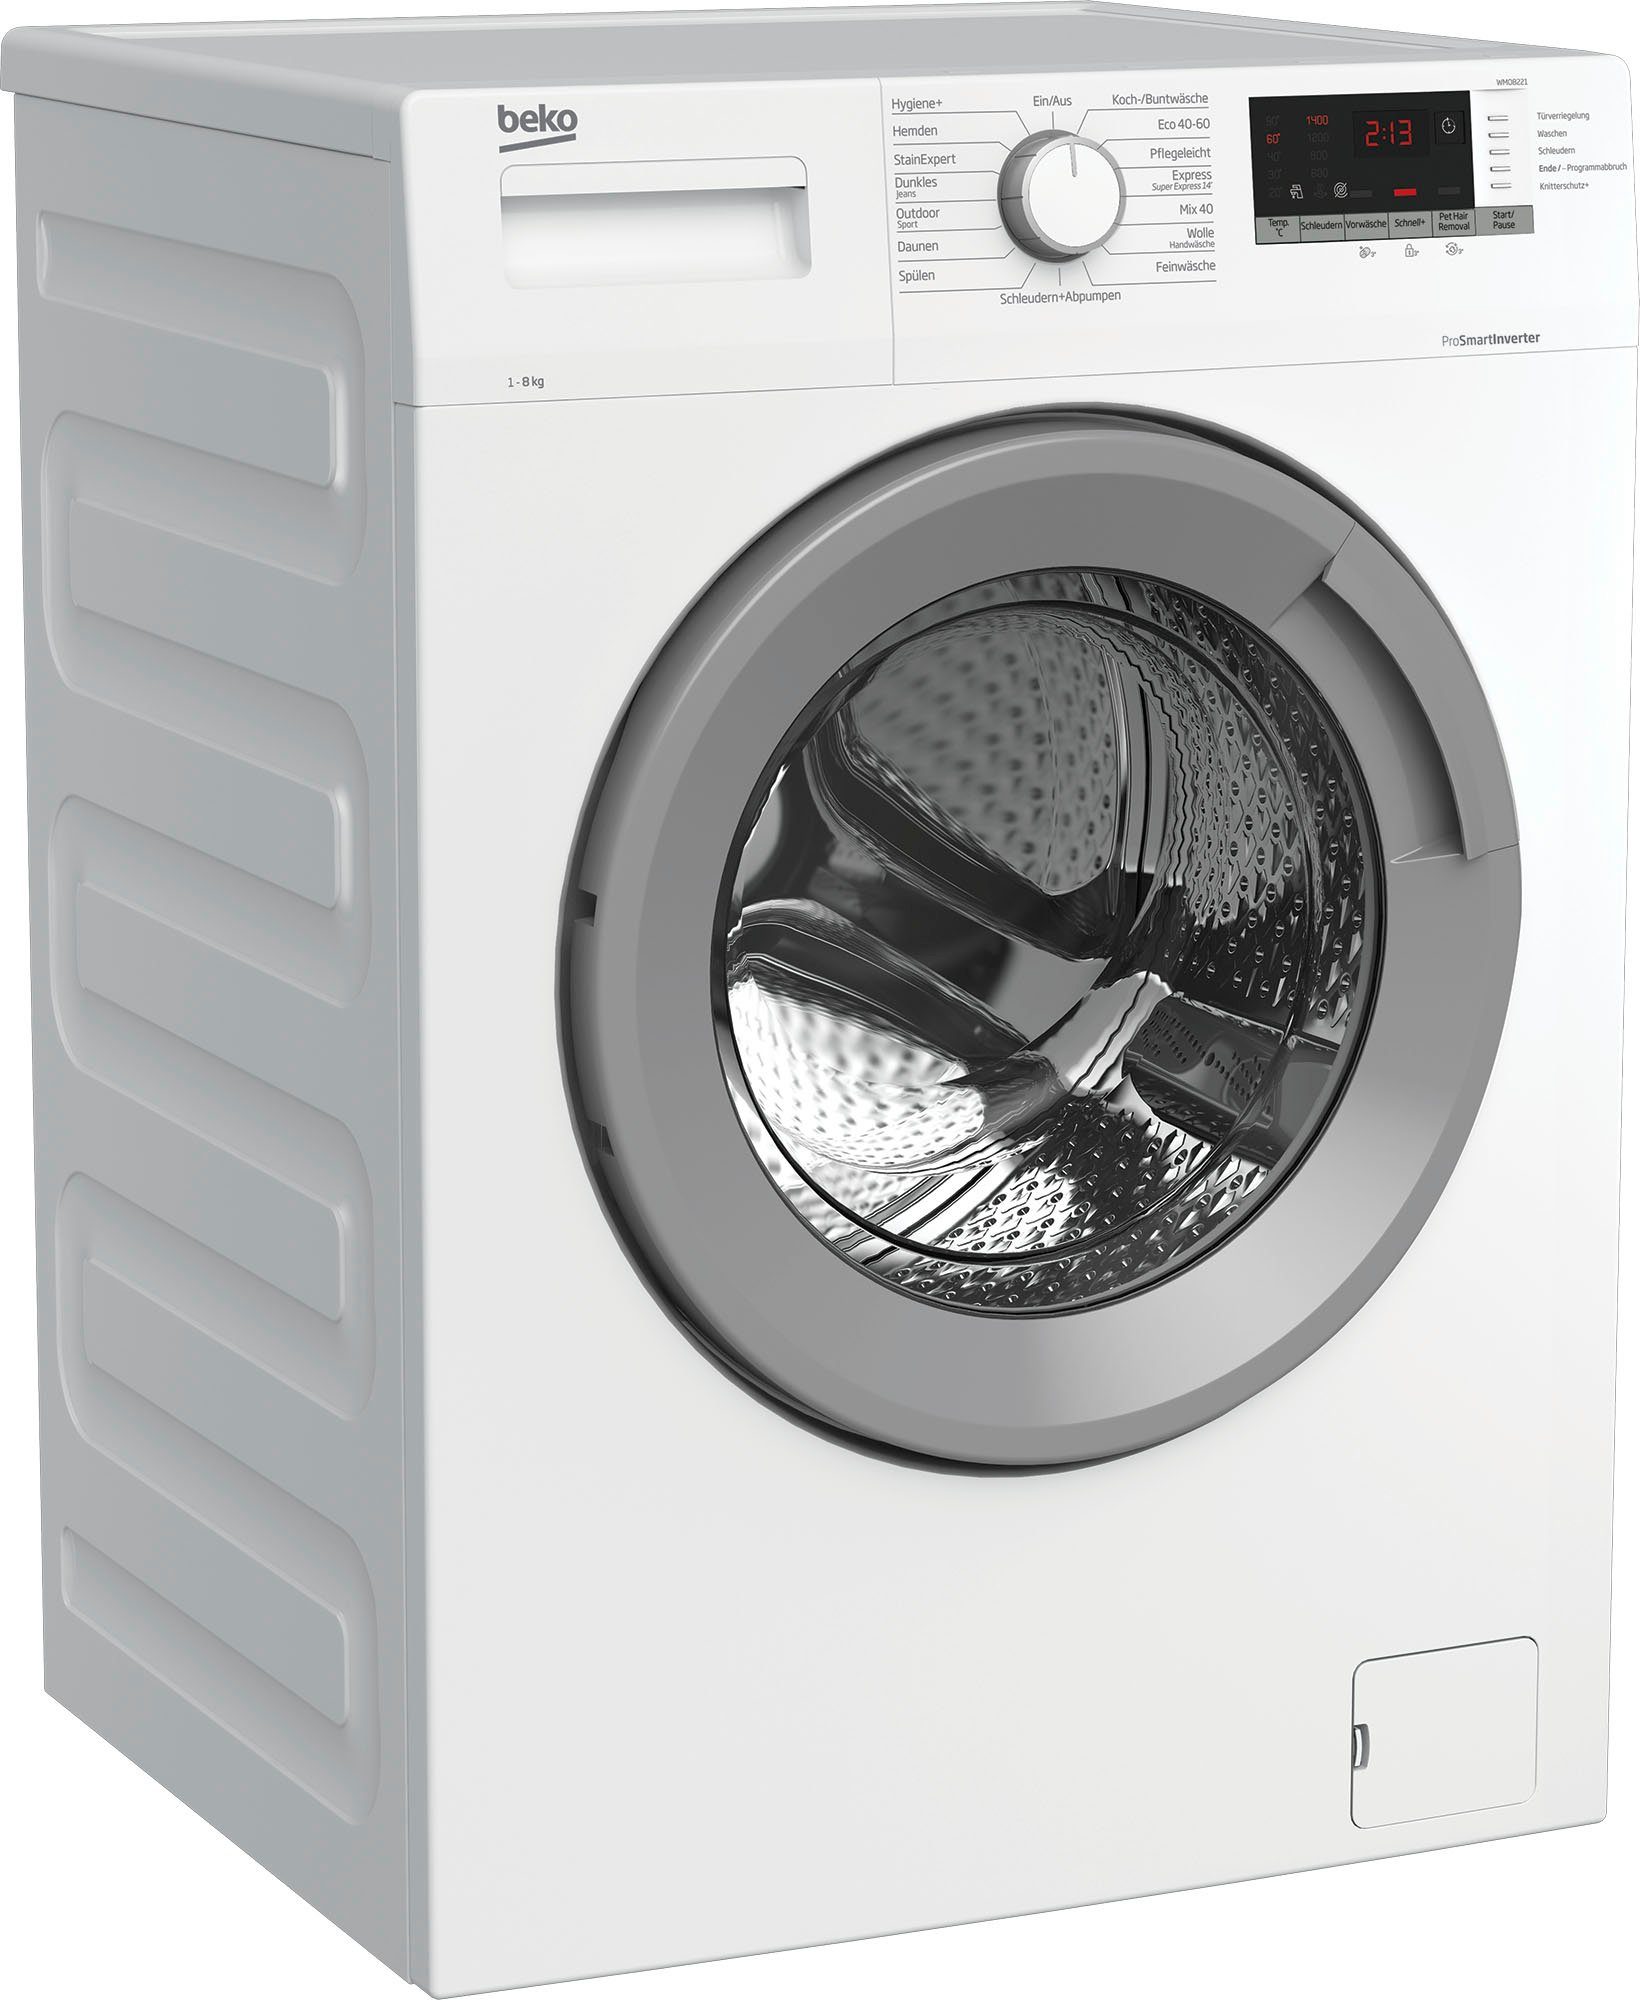 8 BEKO Waschmaschine U/min kg, 1400 WMO8221,